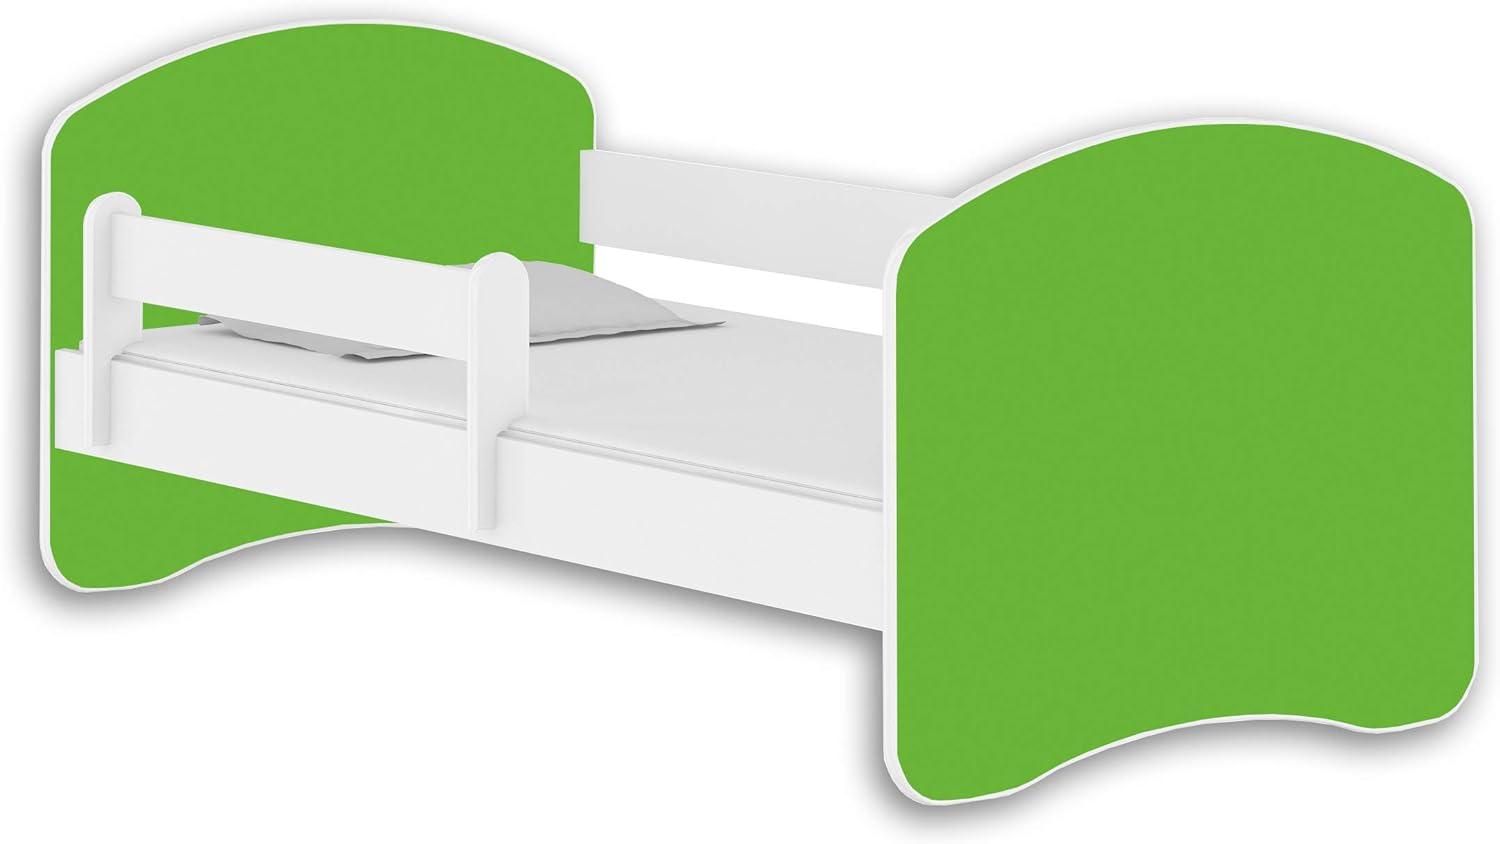 Jugendbett Kinderbett mit einer Schublade mit Rausfallschutz und Matratze Weiß ACMA II 140 160 180 (180x80 cm, Weiß - Grün) Bild 1